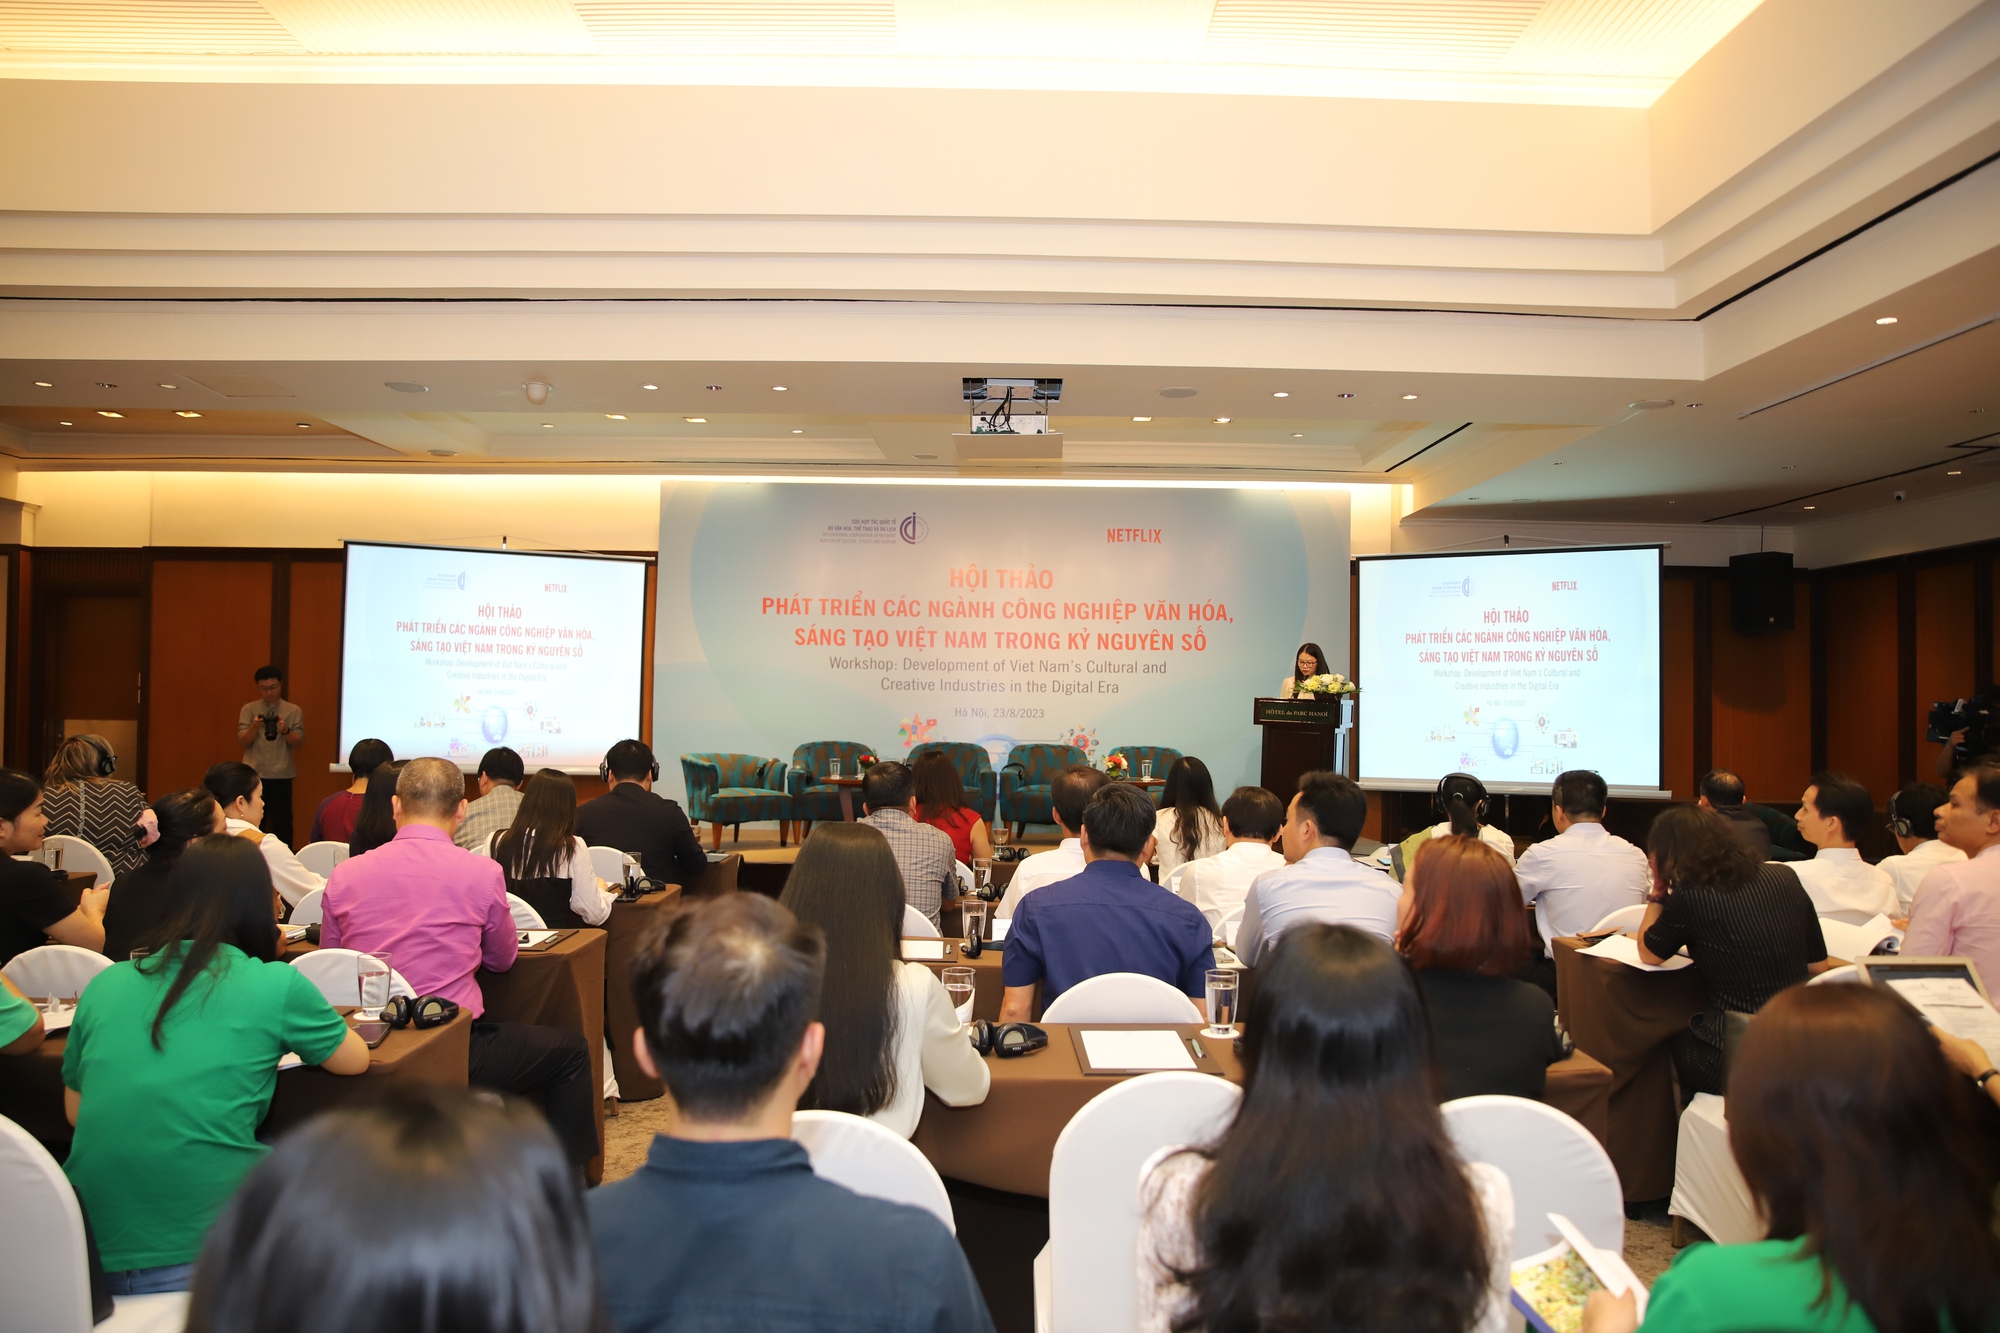 Môi trường số là cơ hội lớn để các ngành công nghiệp văn hóa, sáng tạo Việt Nam tiếp cận với thế giới - Ảnh 1.